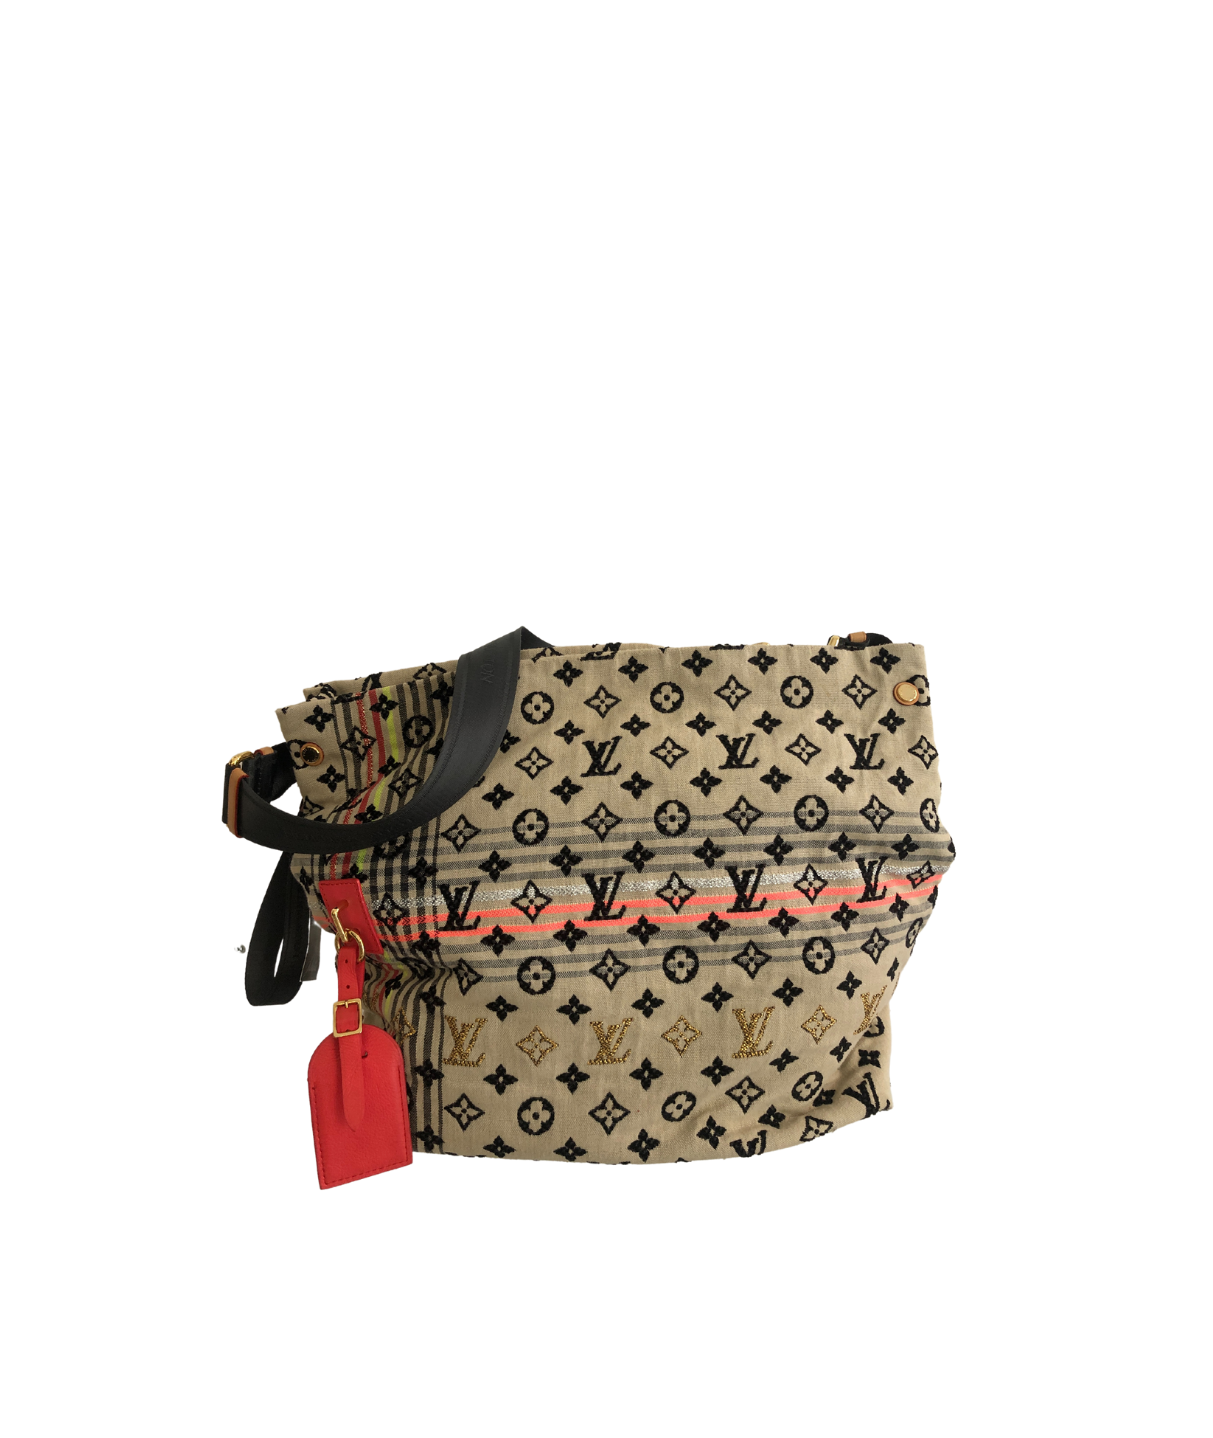 Louis Vuitton Mongram Cheche Bohemian Bag